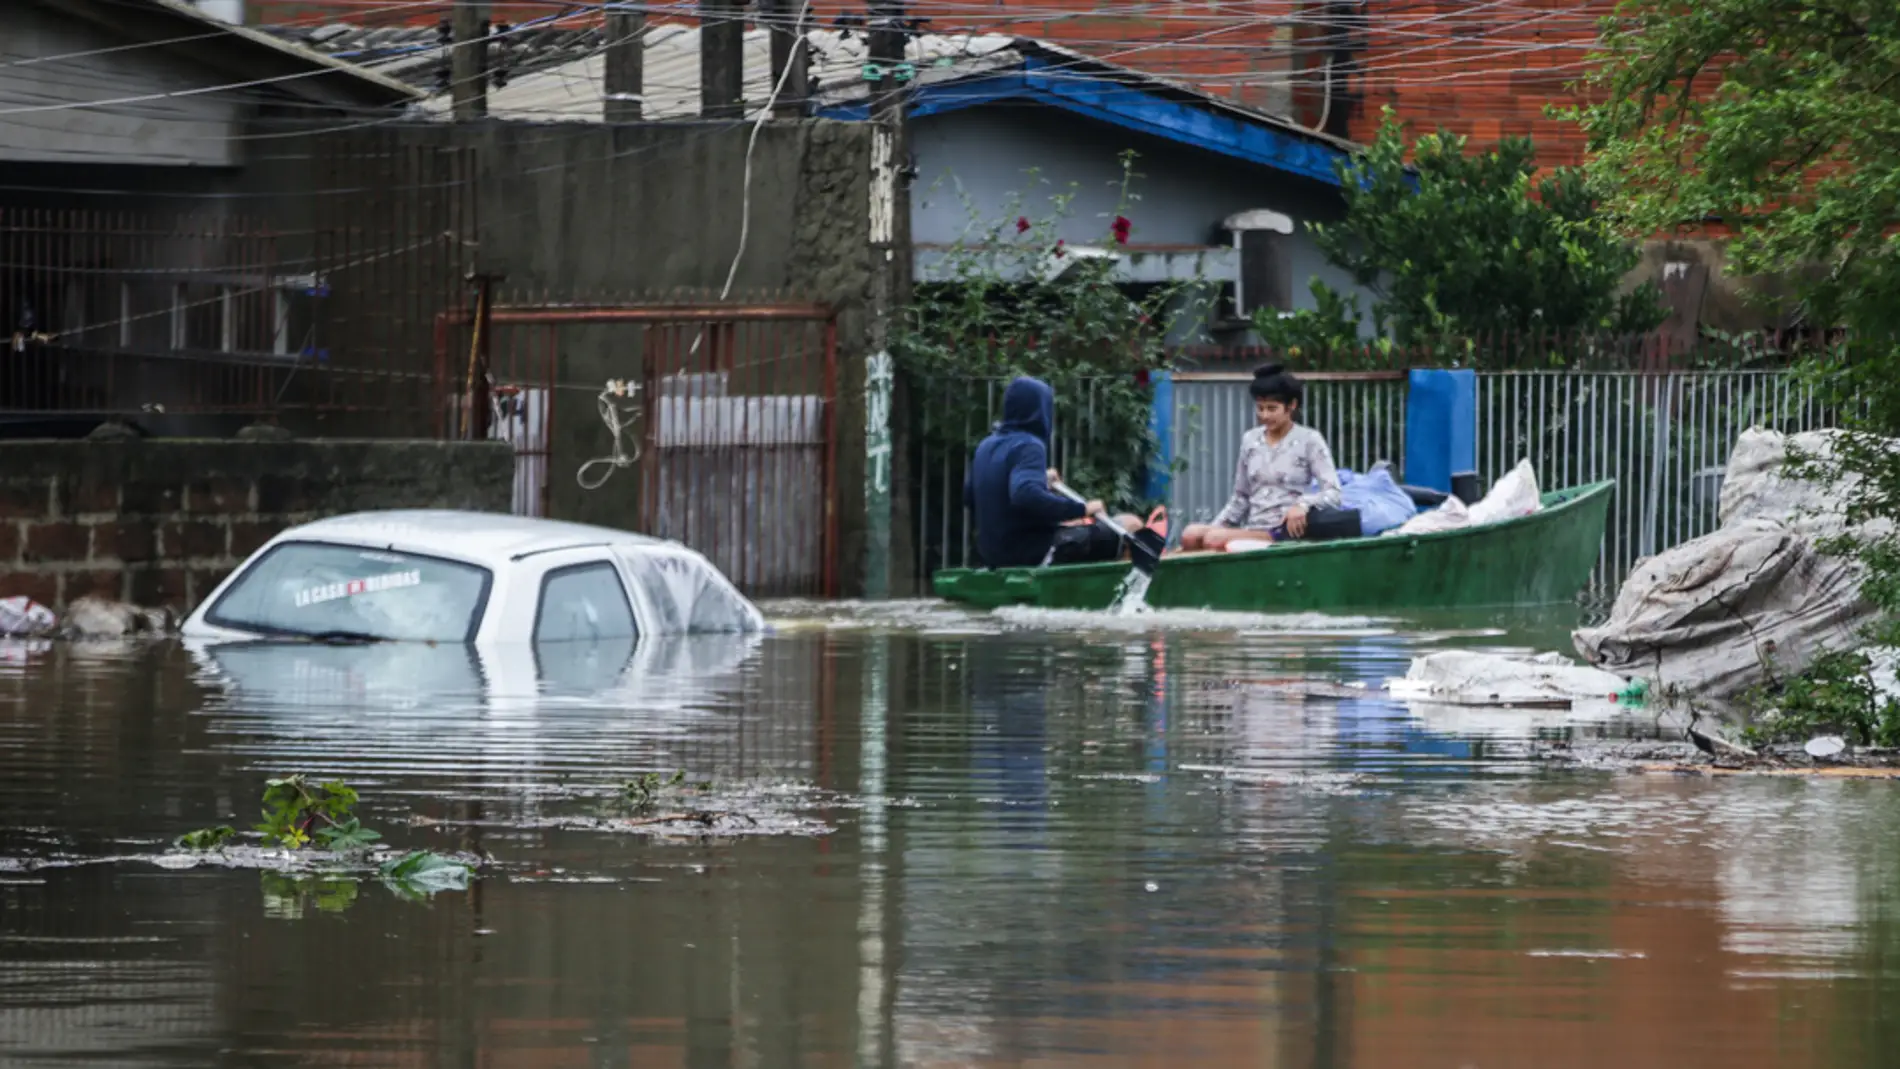 Fuertes inundaciones dejan decenas de muertos y desaparecidos en Brasil